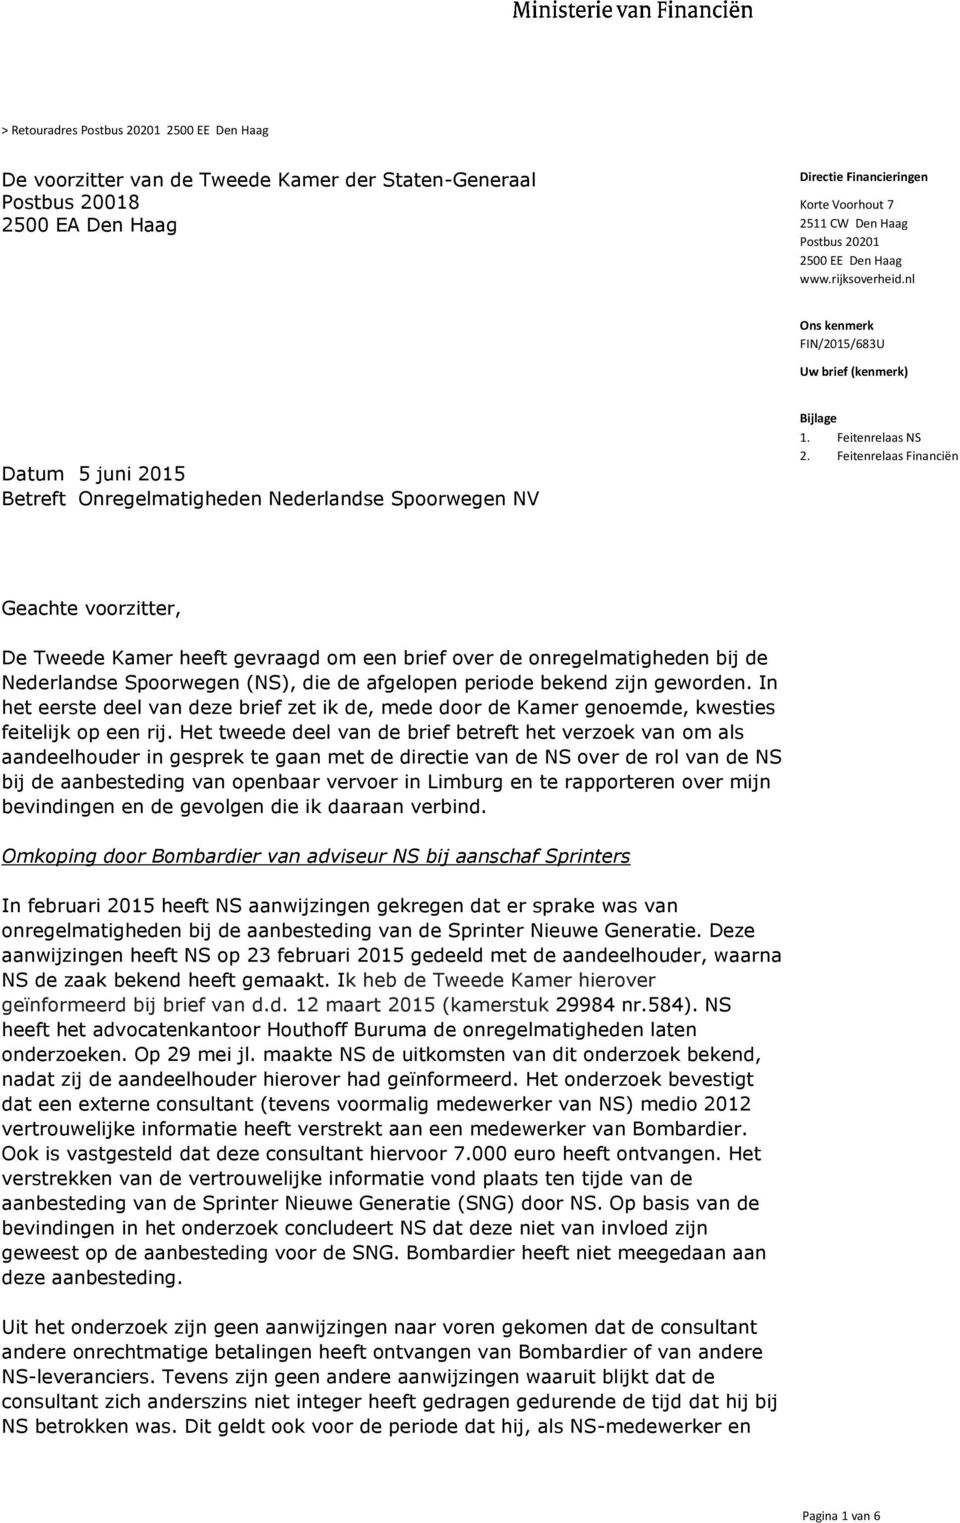 Feitenrelaas Financiën Geachte voorzitter, De Tweede Kamer heeft gevraagd om een brief over de onregelmatigheden bij de Nederlandse Spoorwegen (NS), die de afgelopen periode bekend zijn geworden.